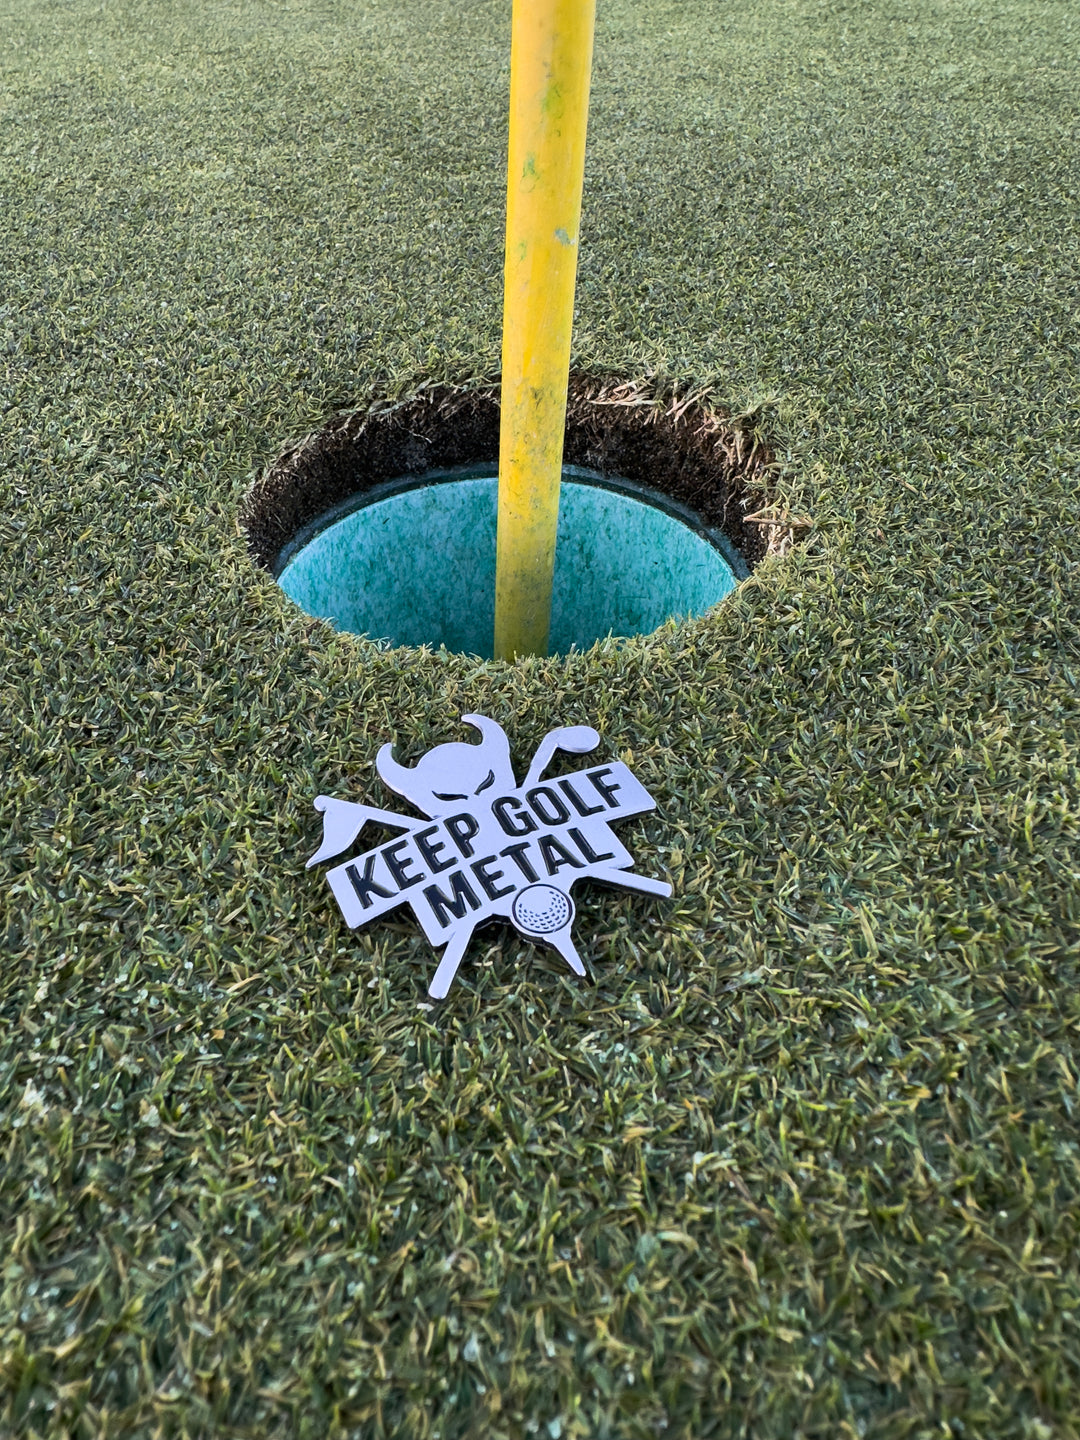 Keep Golf Metal Logo Ball Marker